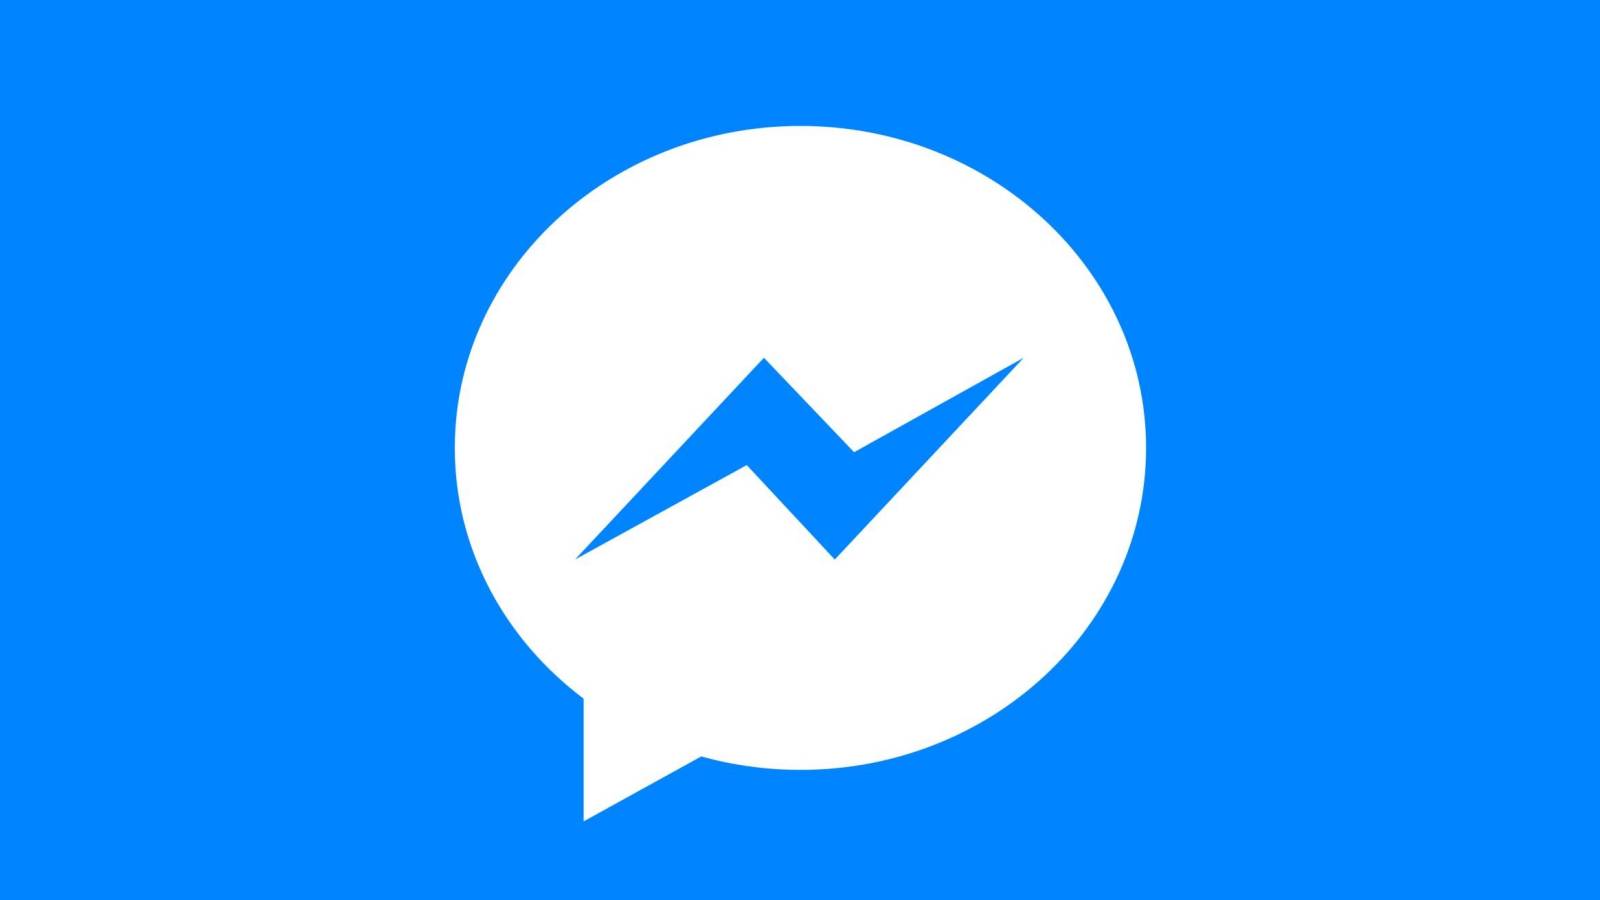 Facebook Messenger News apporté avec la récente mise à jour pour les téléphones